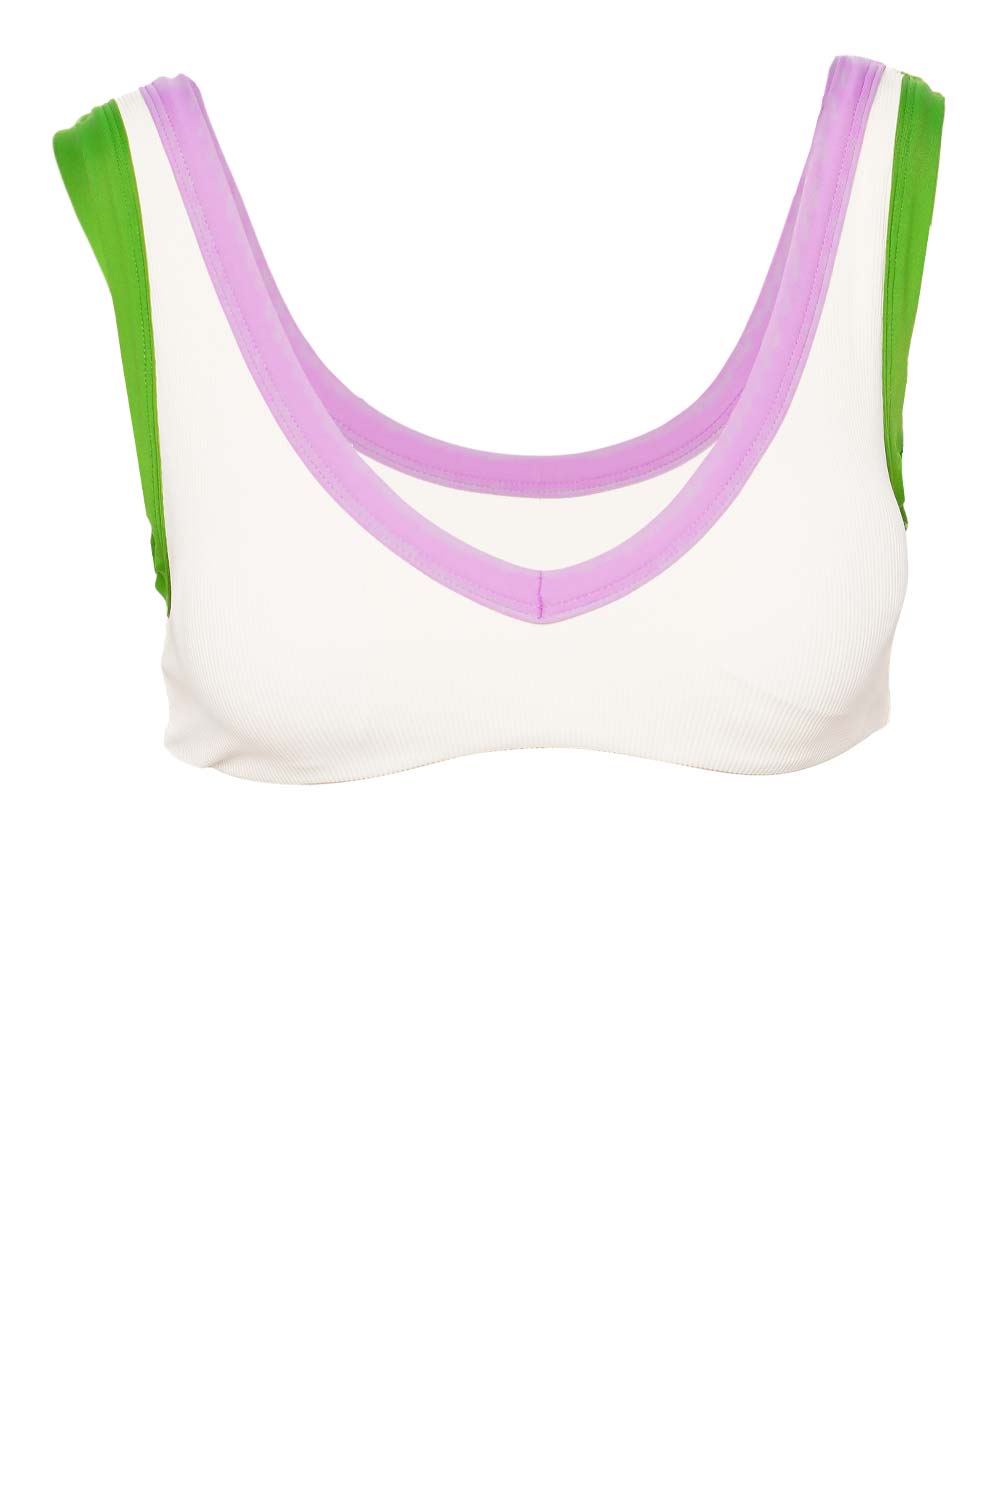 L*Space Lala Cream Jewel Bikini Top